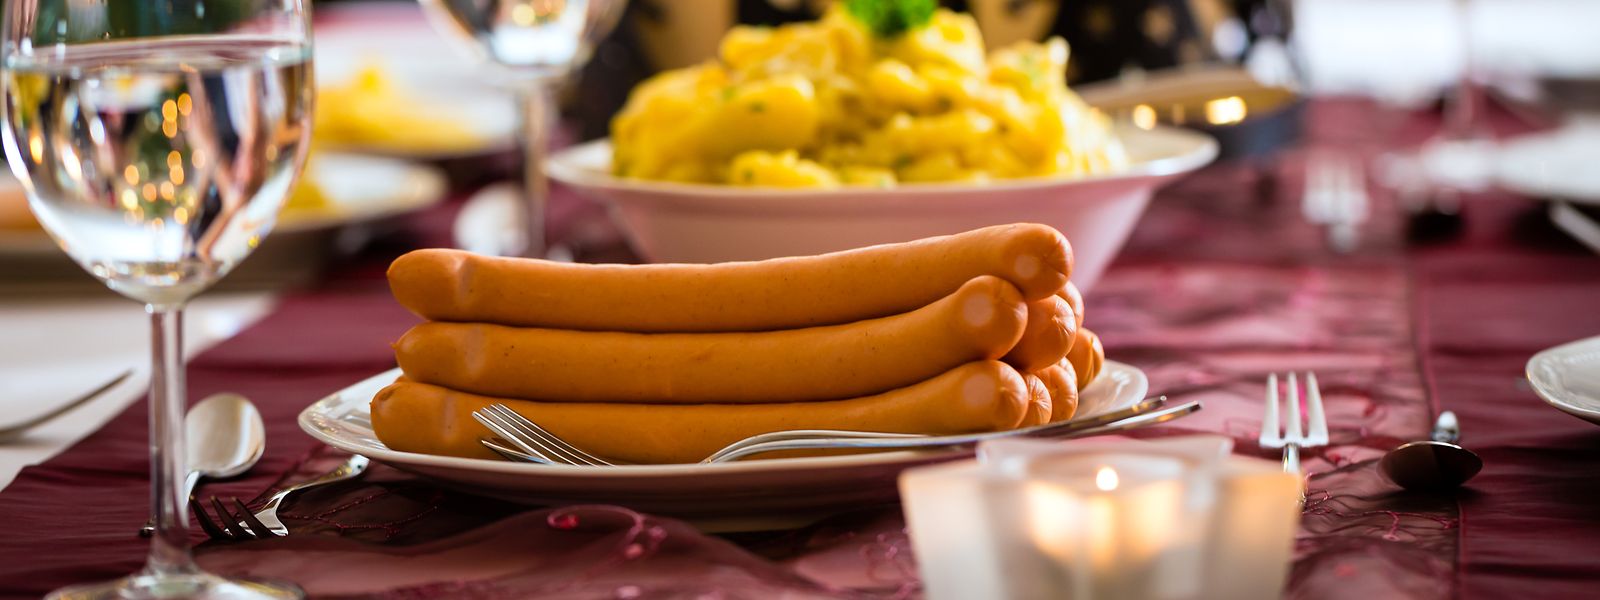 Kurios anmutende Tradition: In einem Fünftel der deutschen Haushalte werden an Heiligabend Wiener Würstchen und Kartoffelsalat aufgetischt.